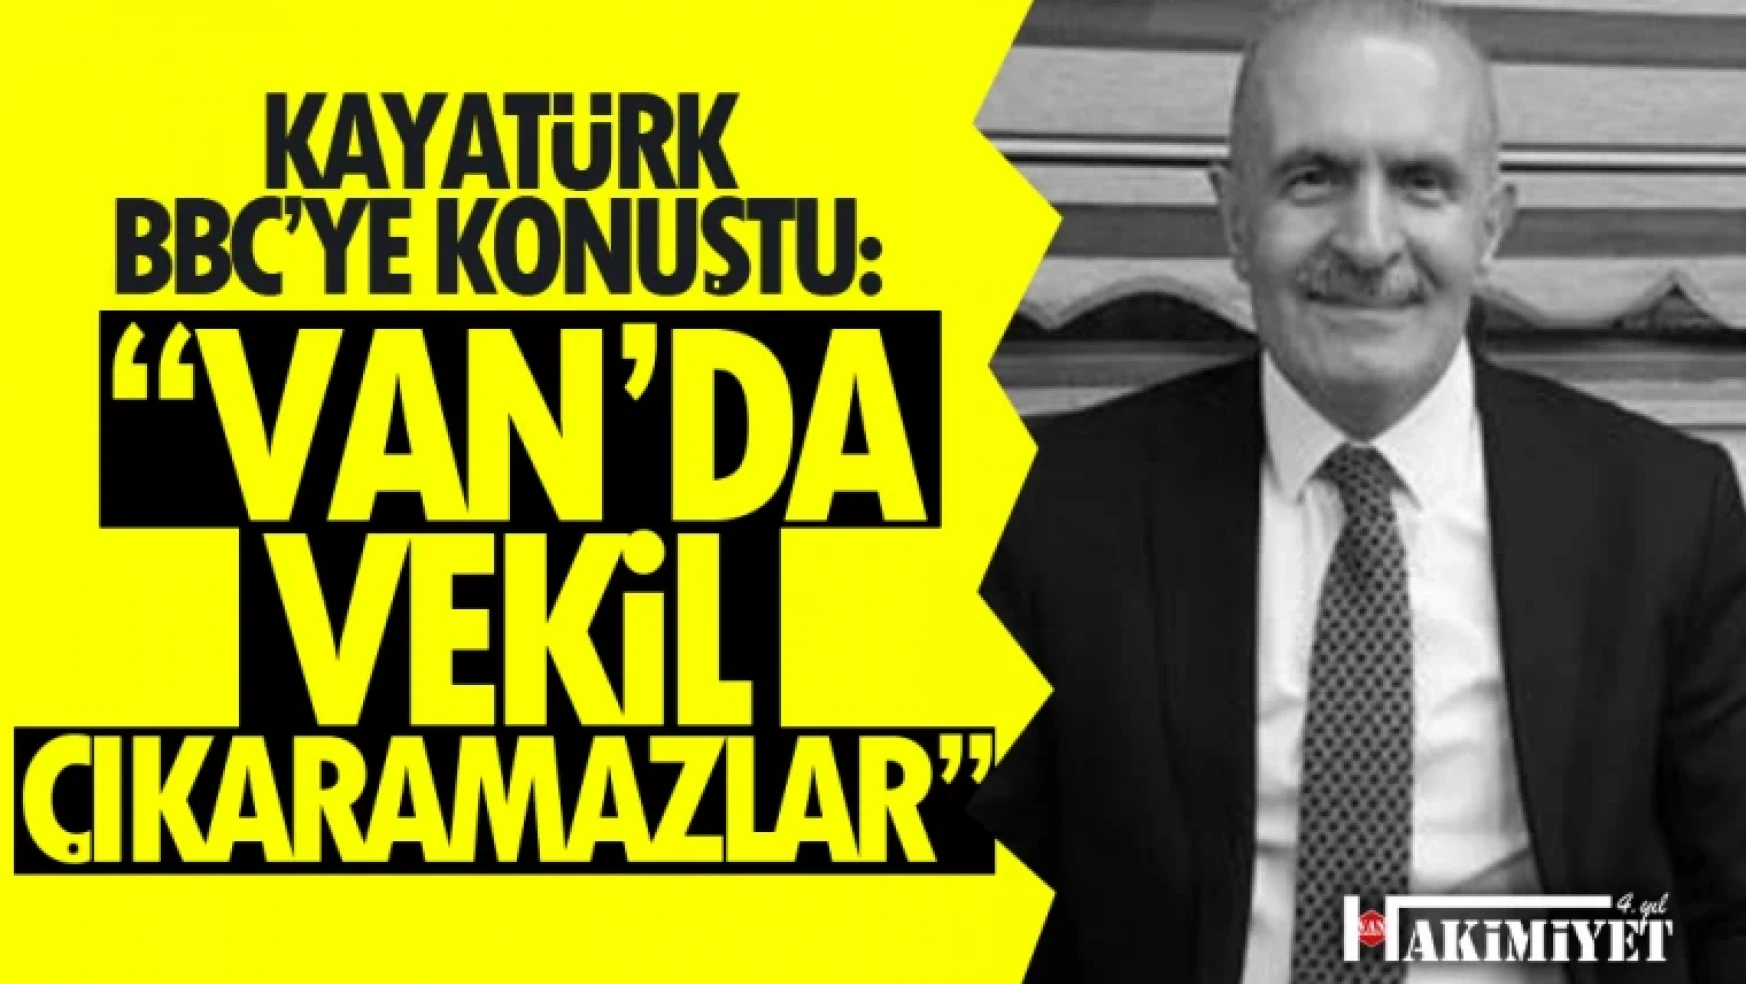 Burhan Kayatürk BBC'ye konuştu: Halkımız neye karar vereceğini çok iyi bilir!